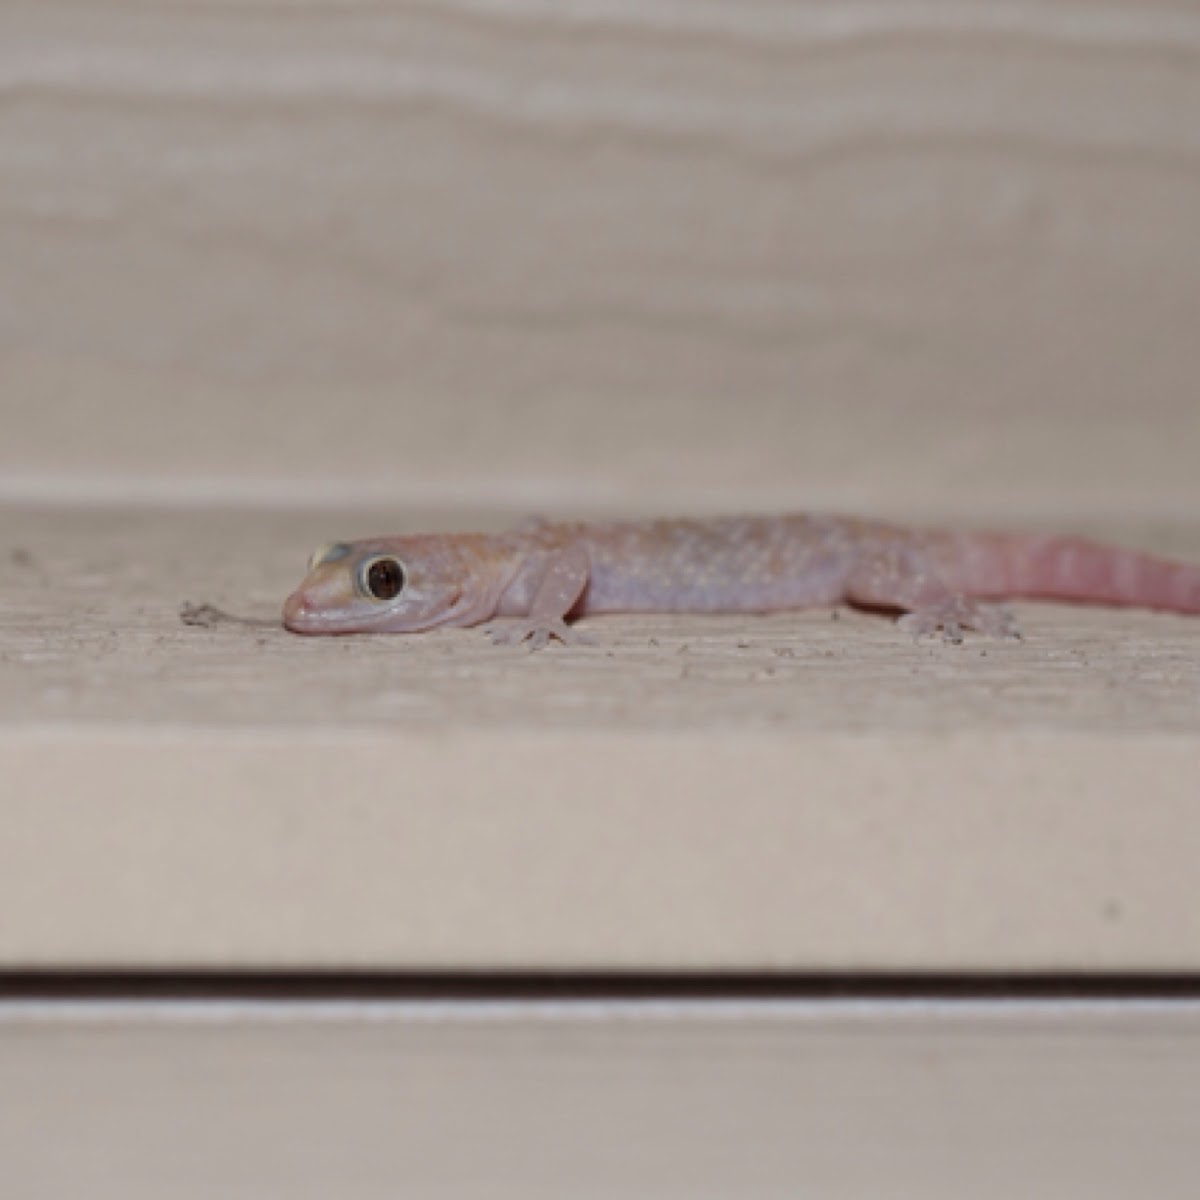 Mediterranean House gecko